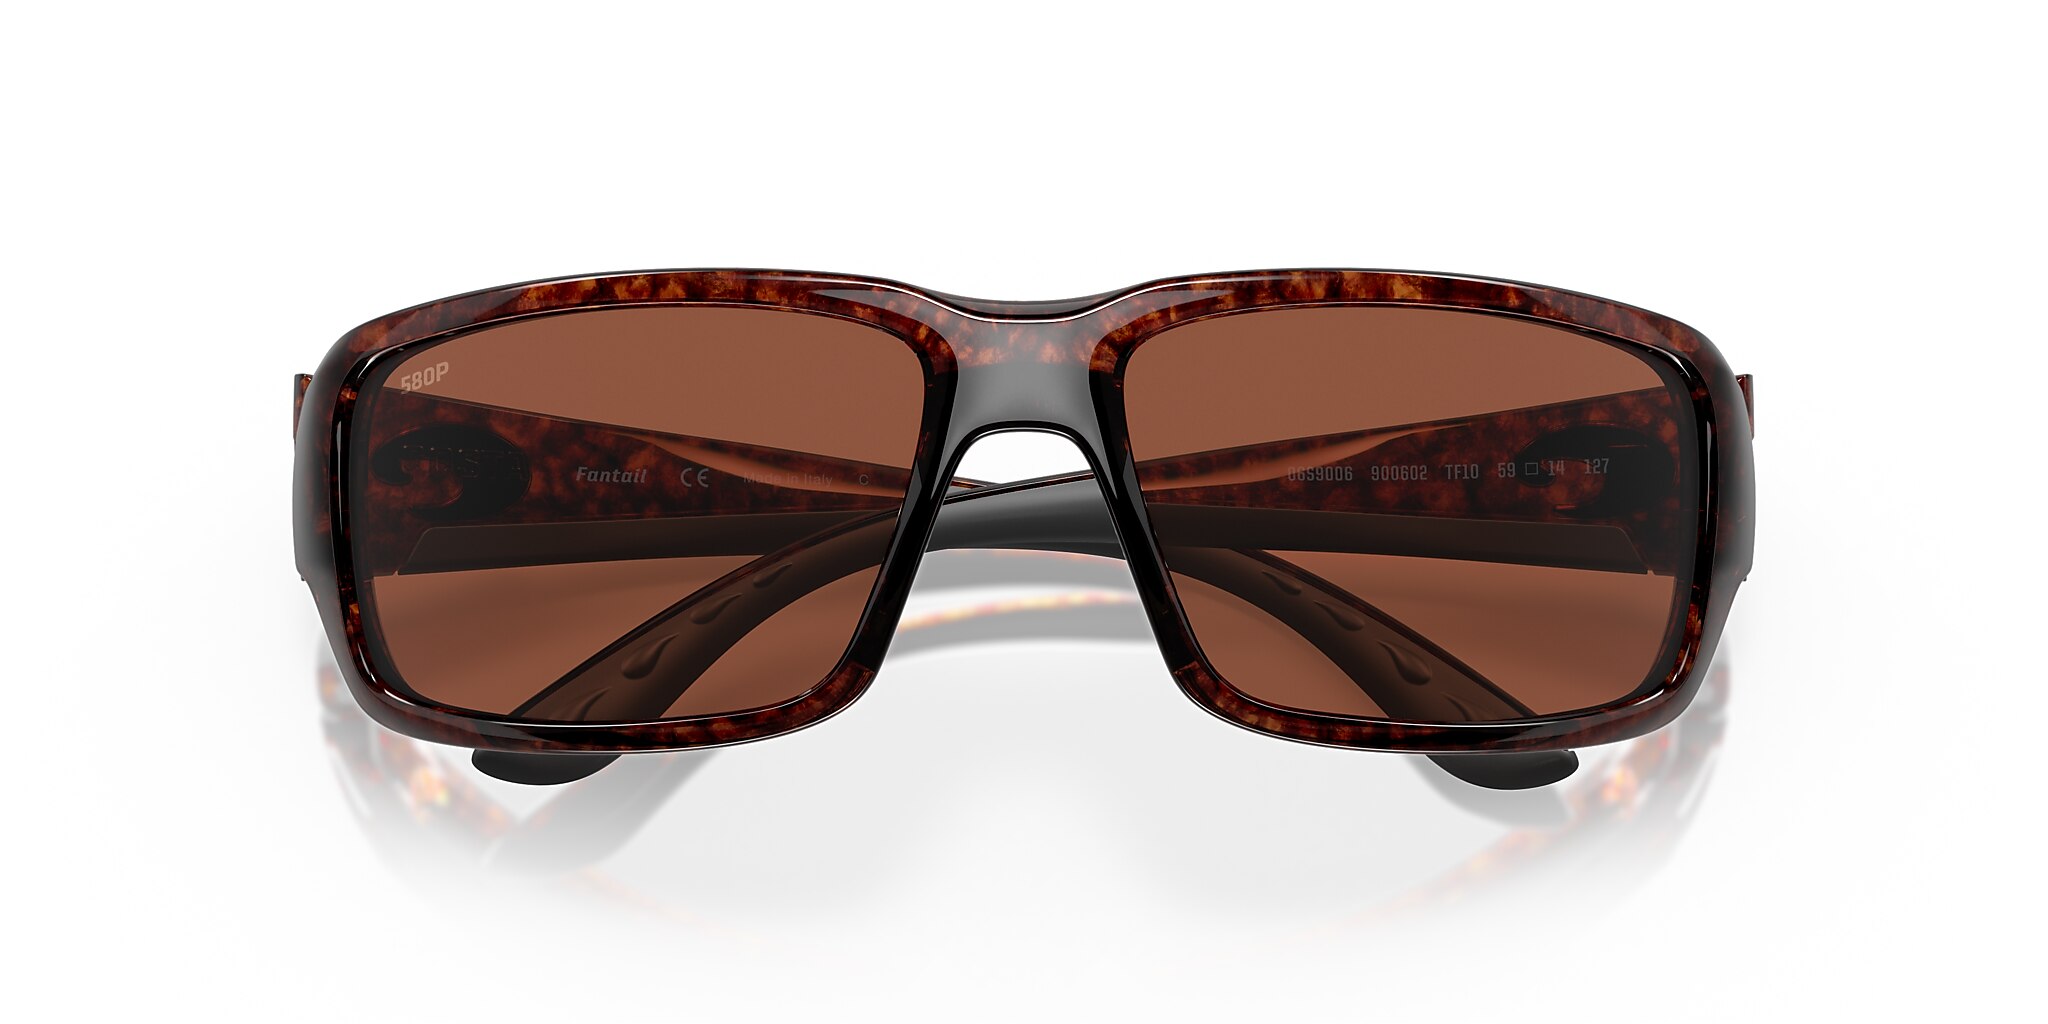 Fantail Polarized Sunglasses in Copper | Costa Del Mar®